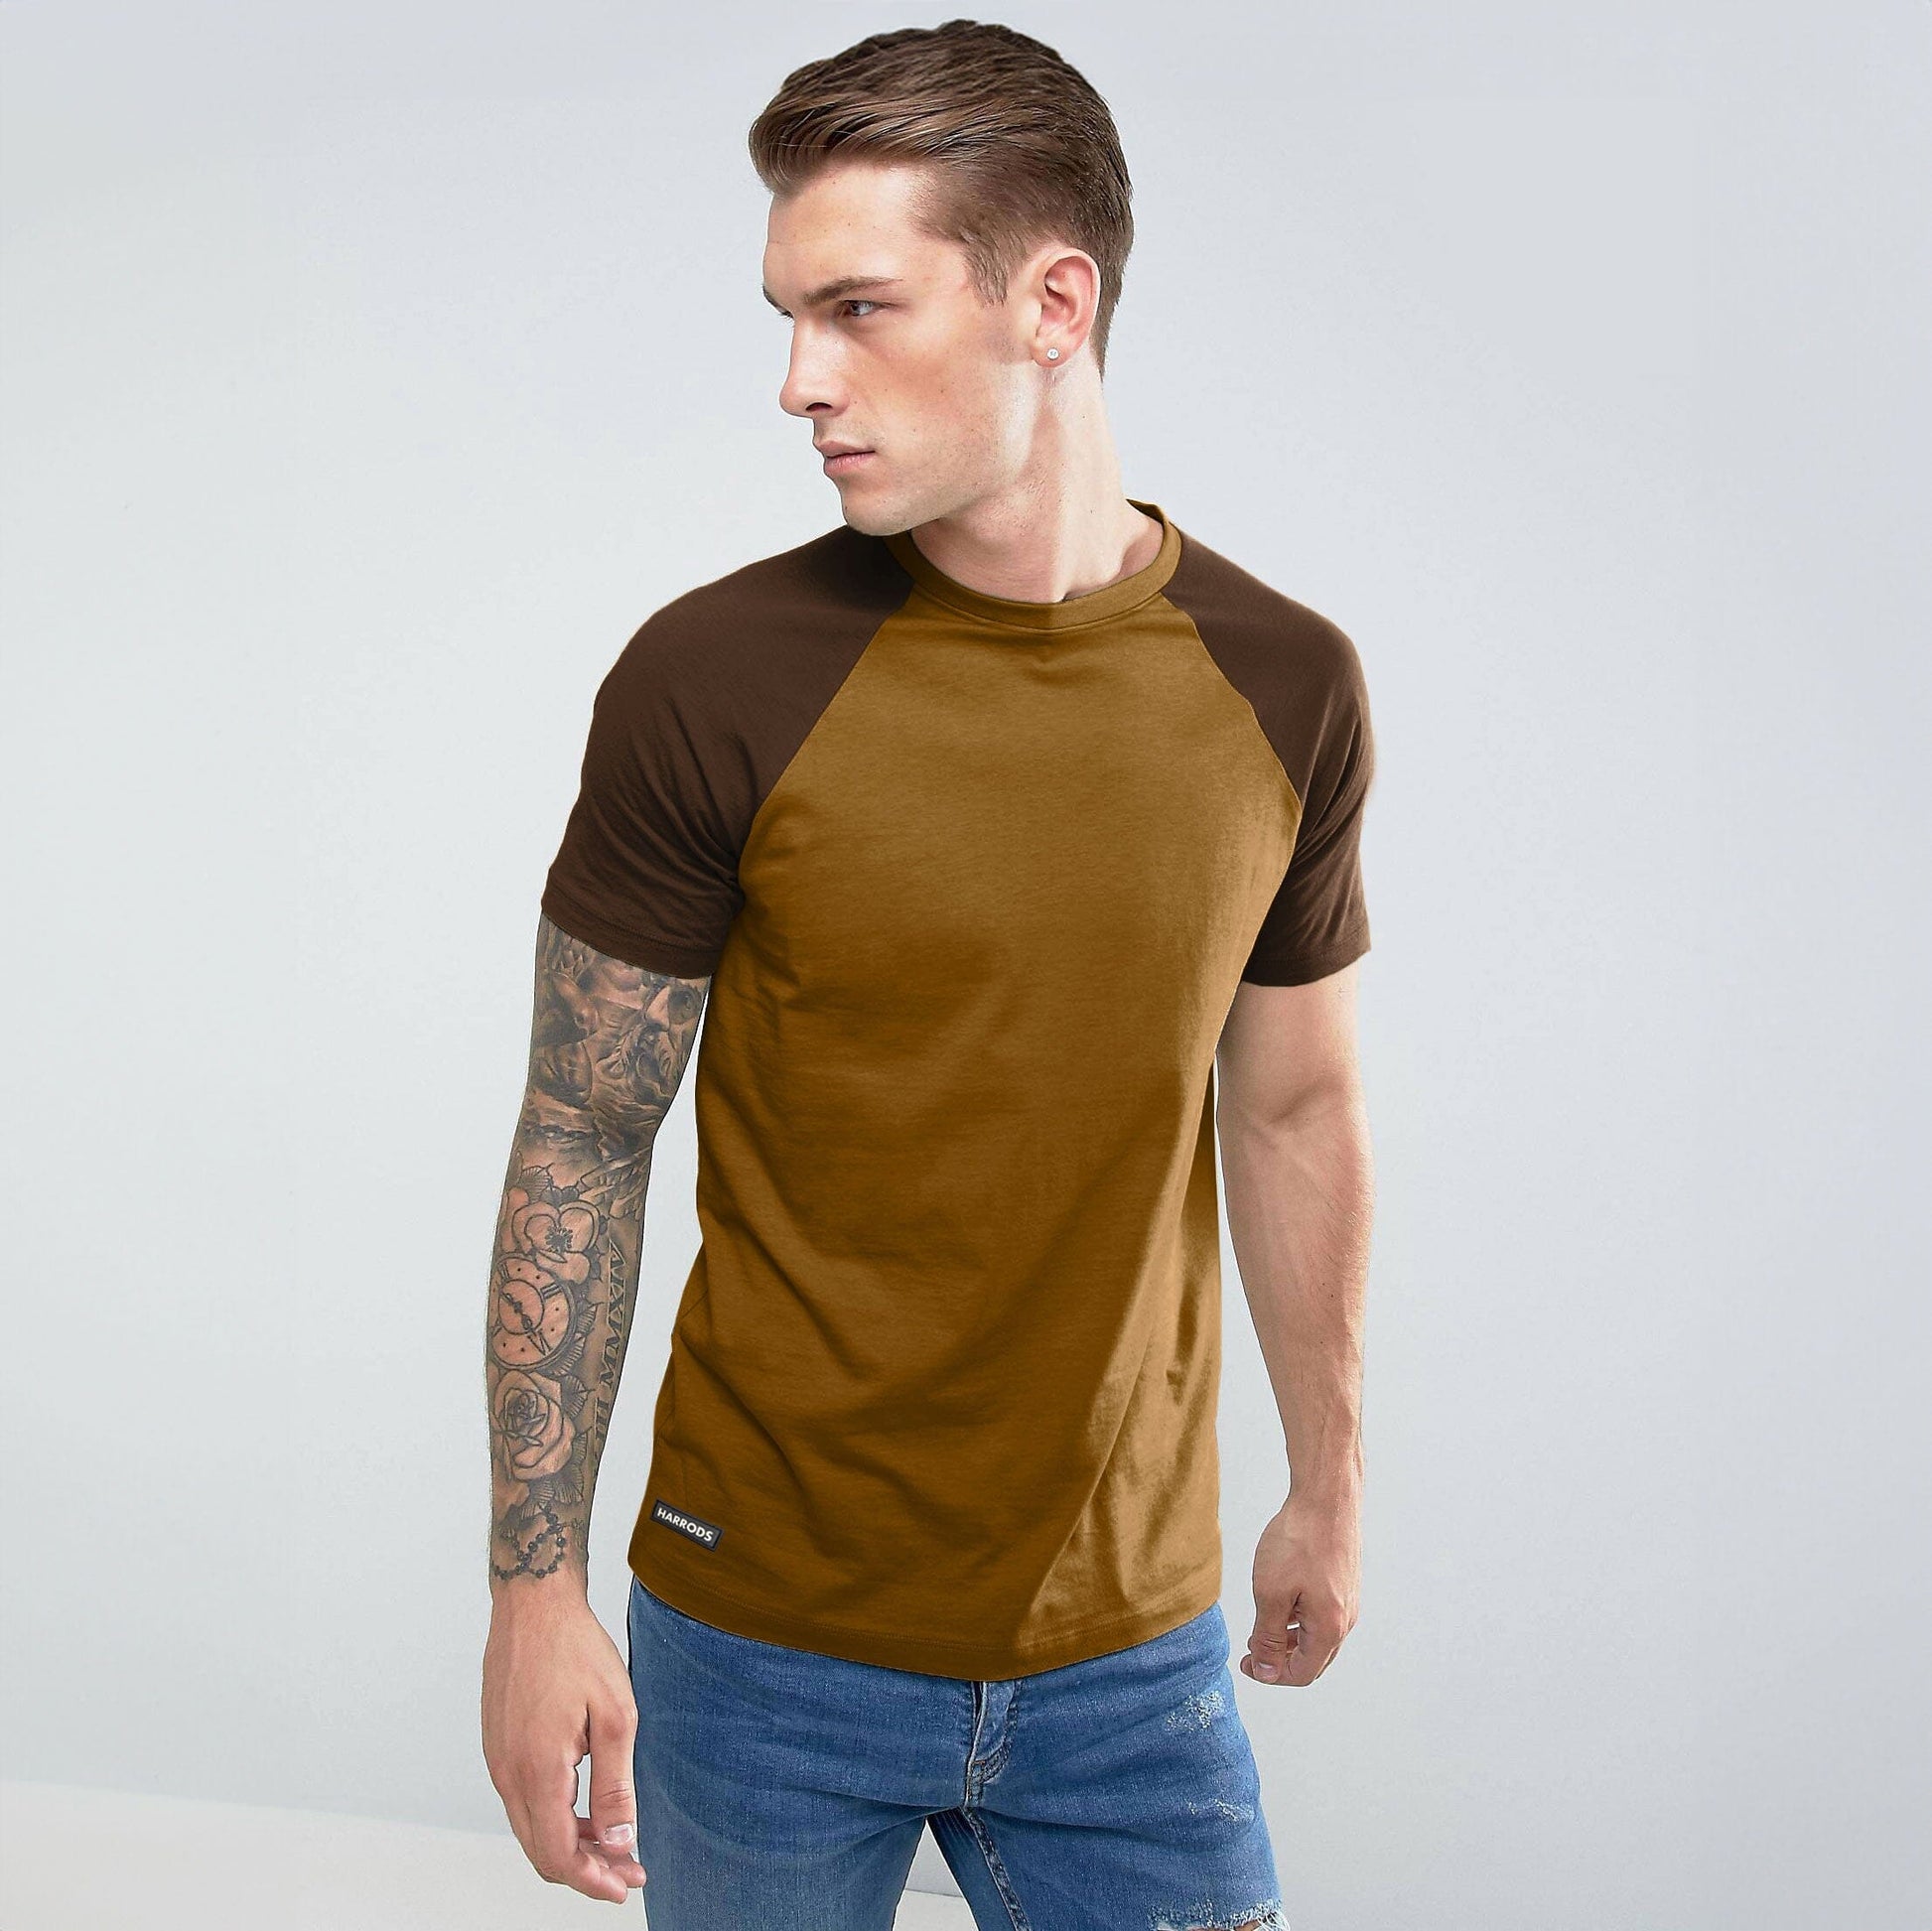 Harrods Men's Contrast Sleeve Style Crew Neck Tee Shirt Men's Tee Shirt IBT Mustard S 